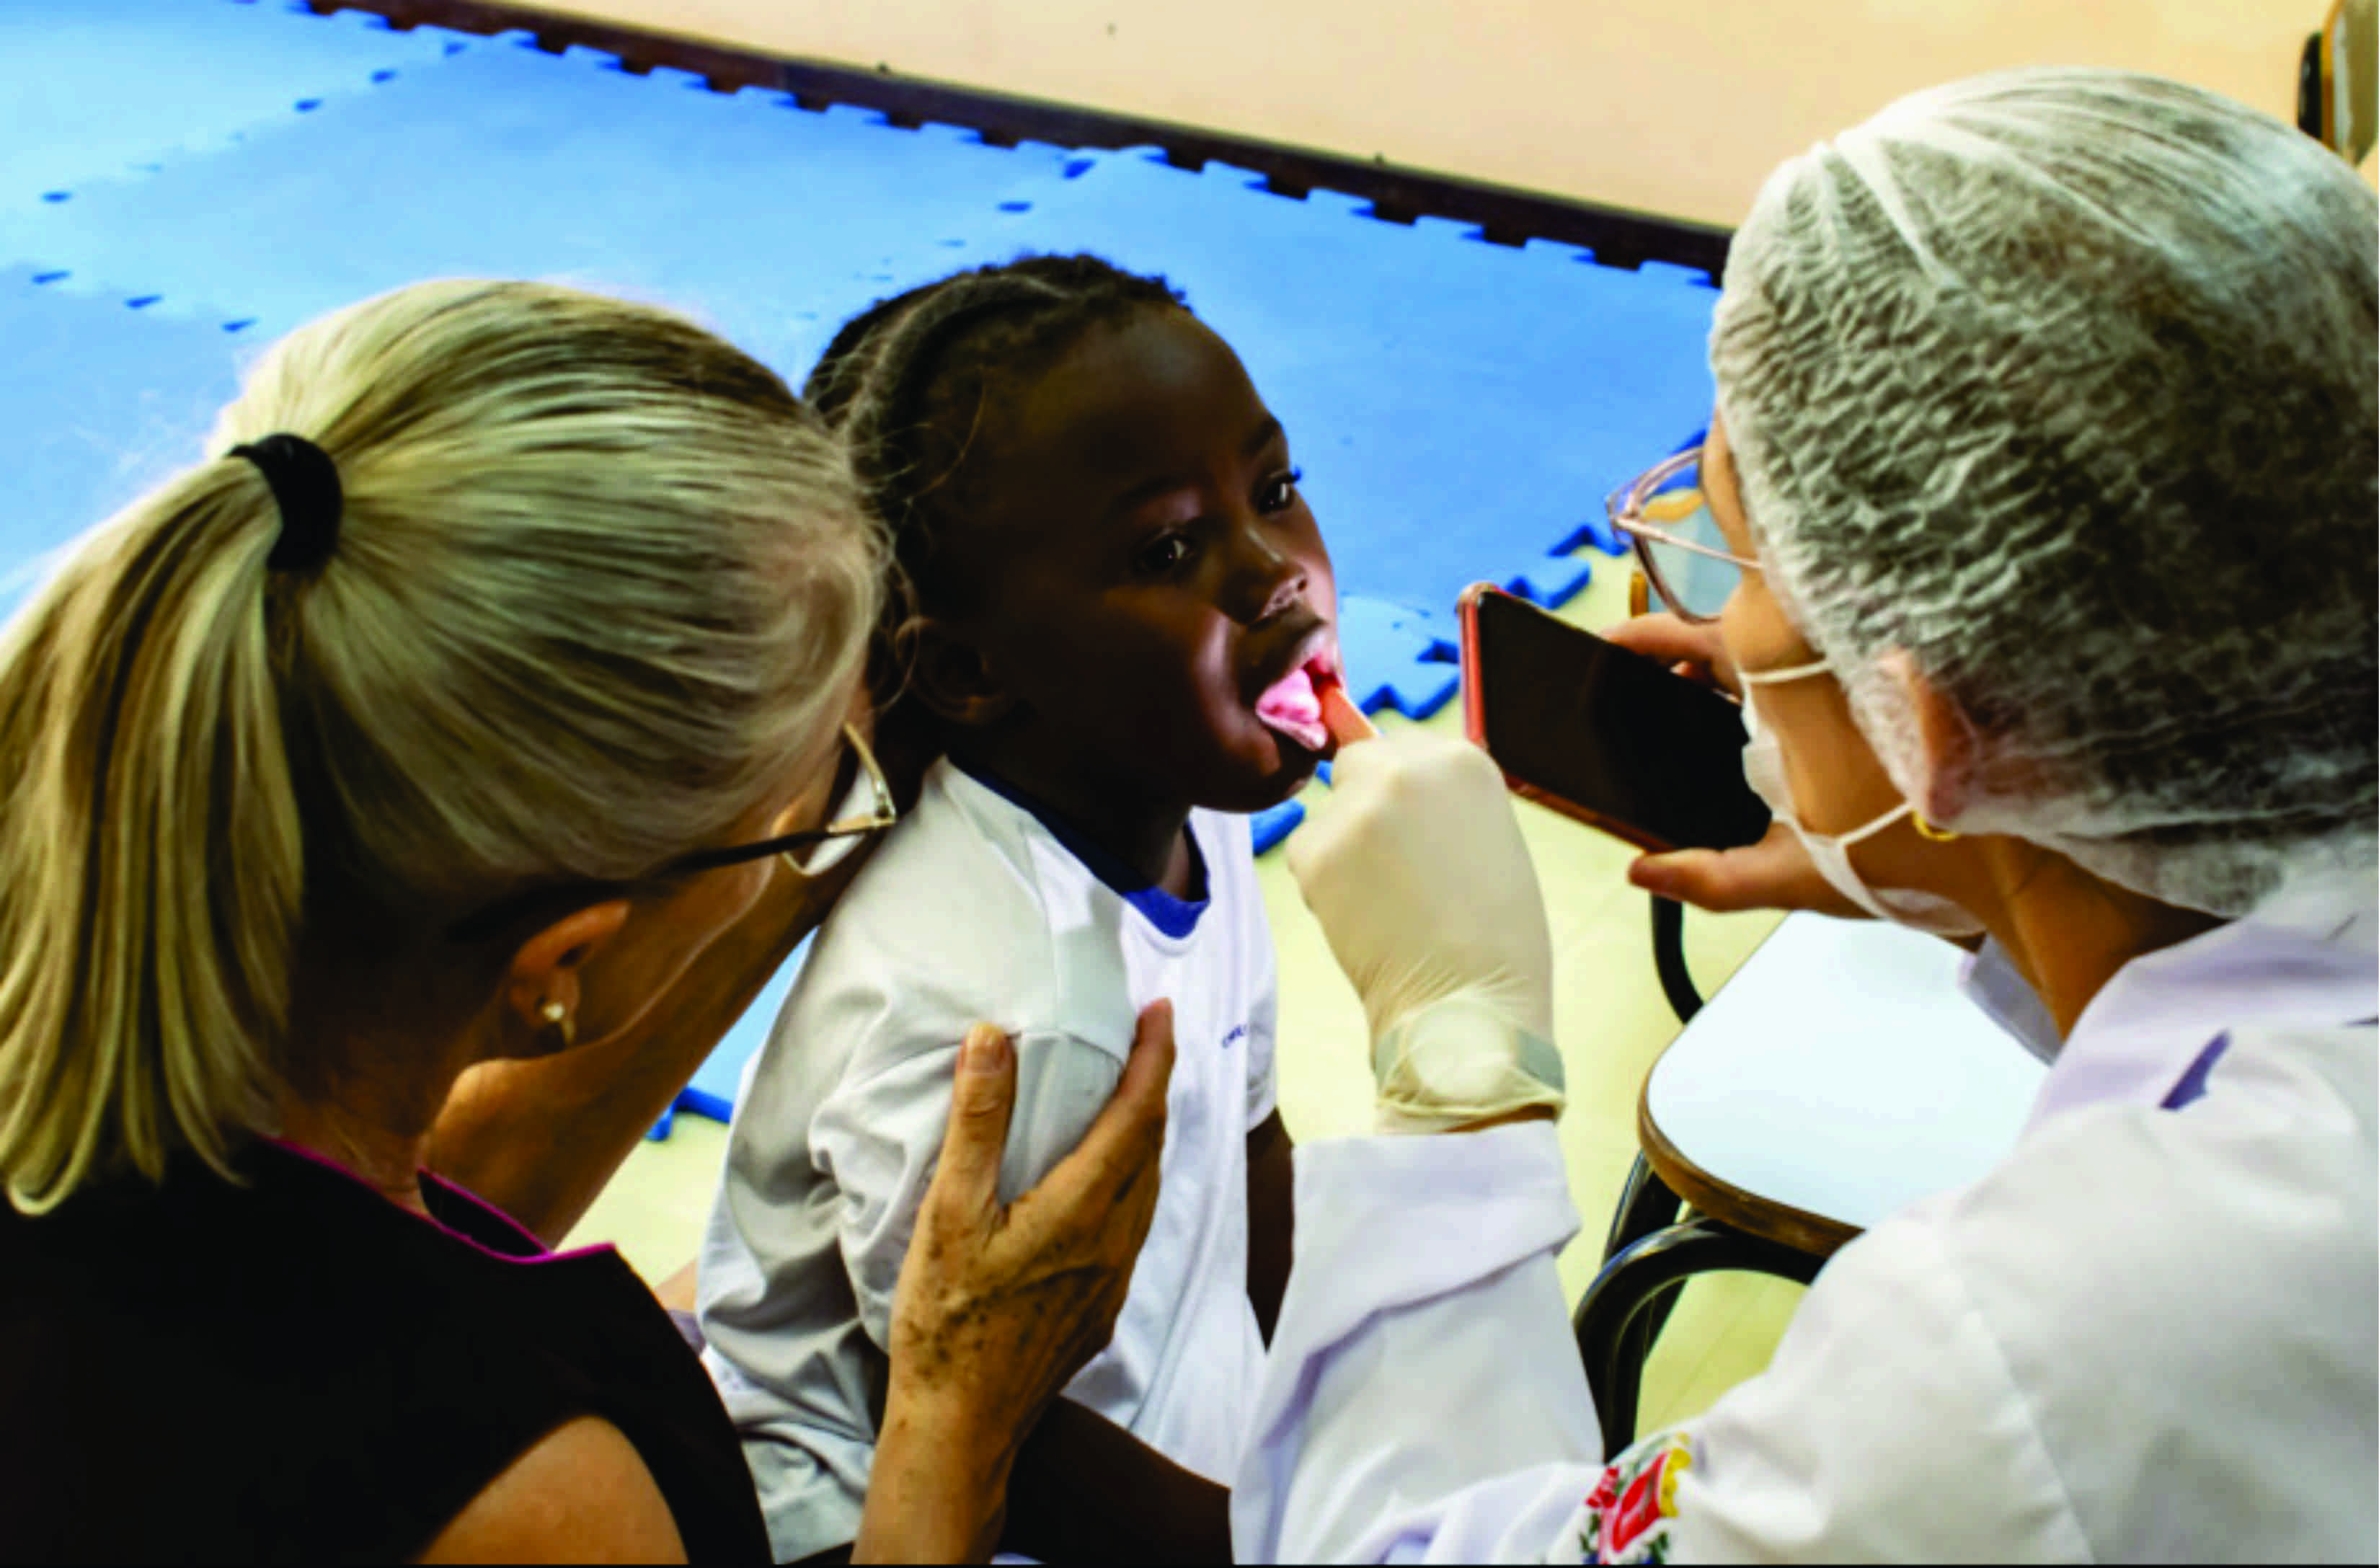 Equipes da Saúde cuidam do sorriso das crianças nas escolas de Curitiba no dia D de Saúde Bucal